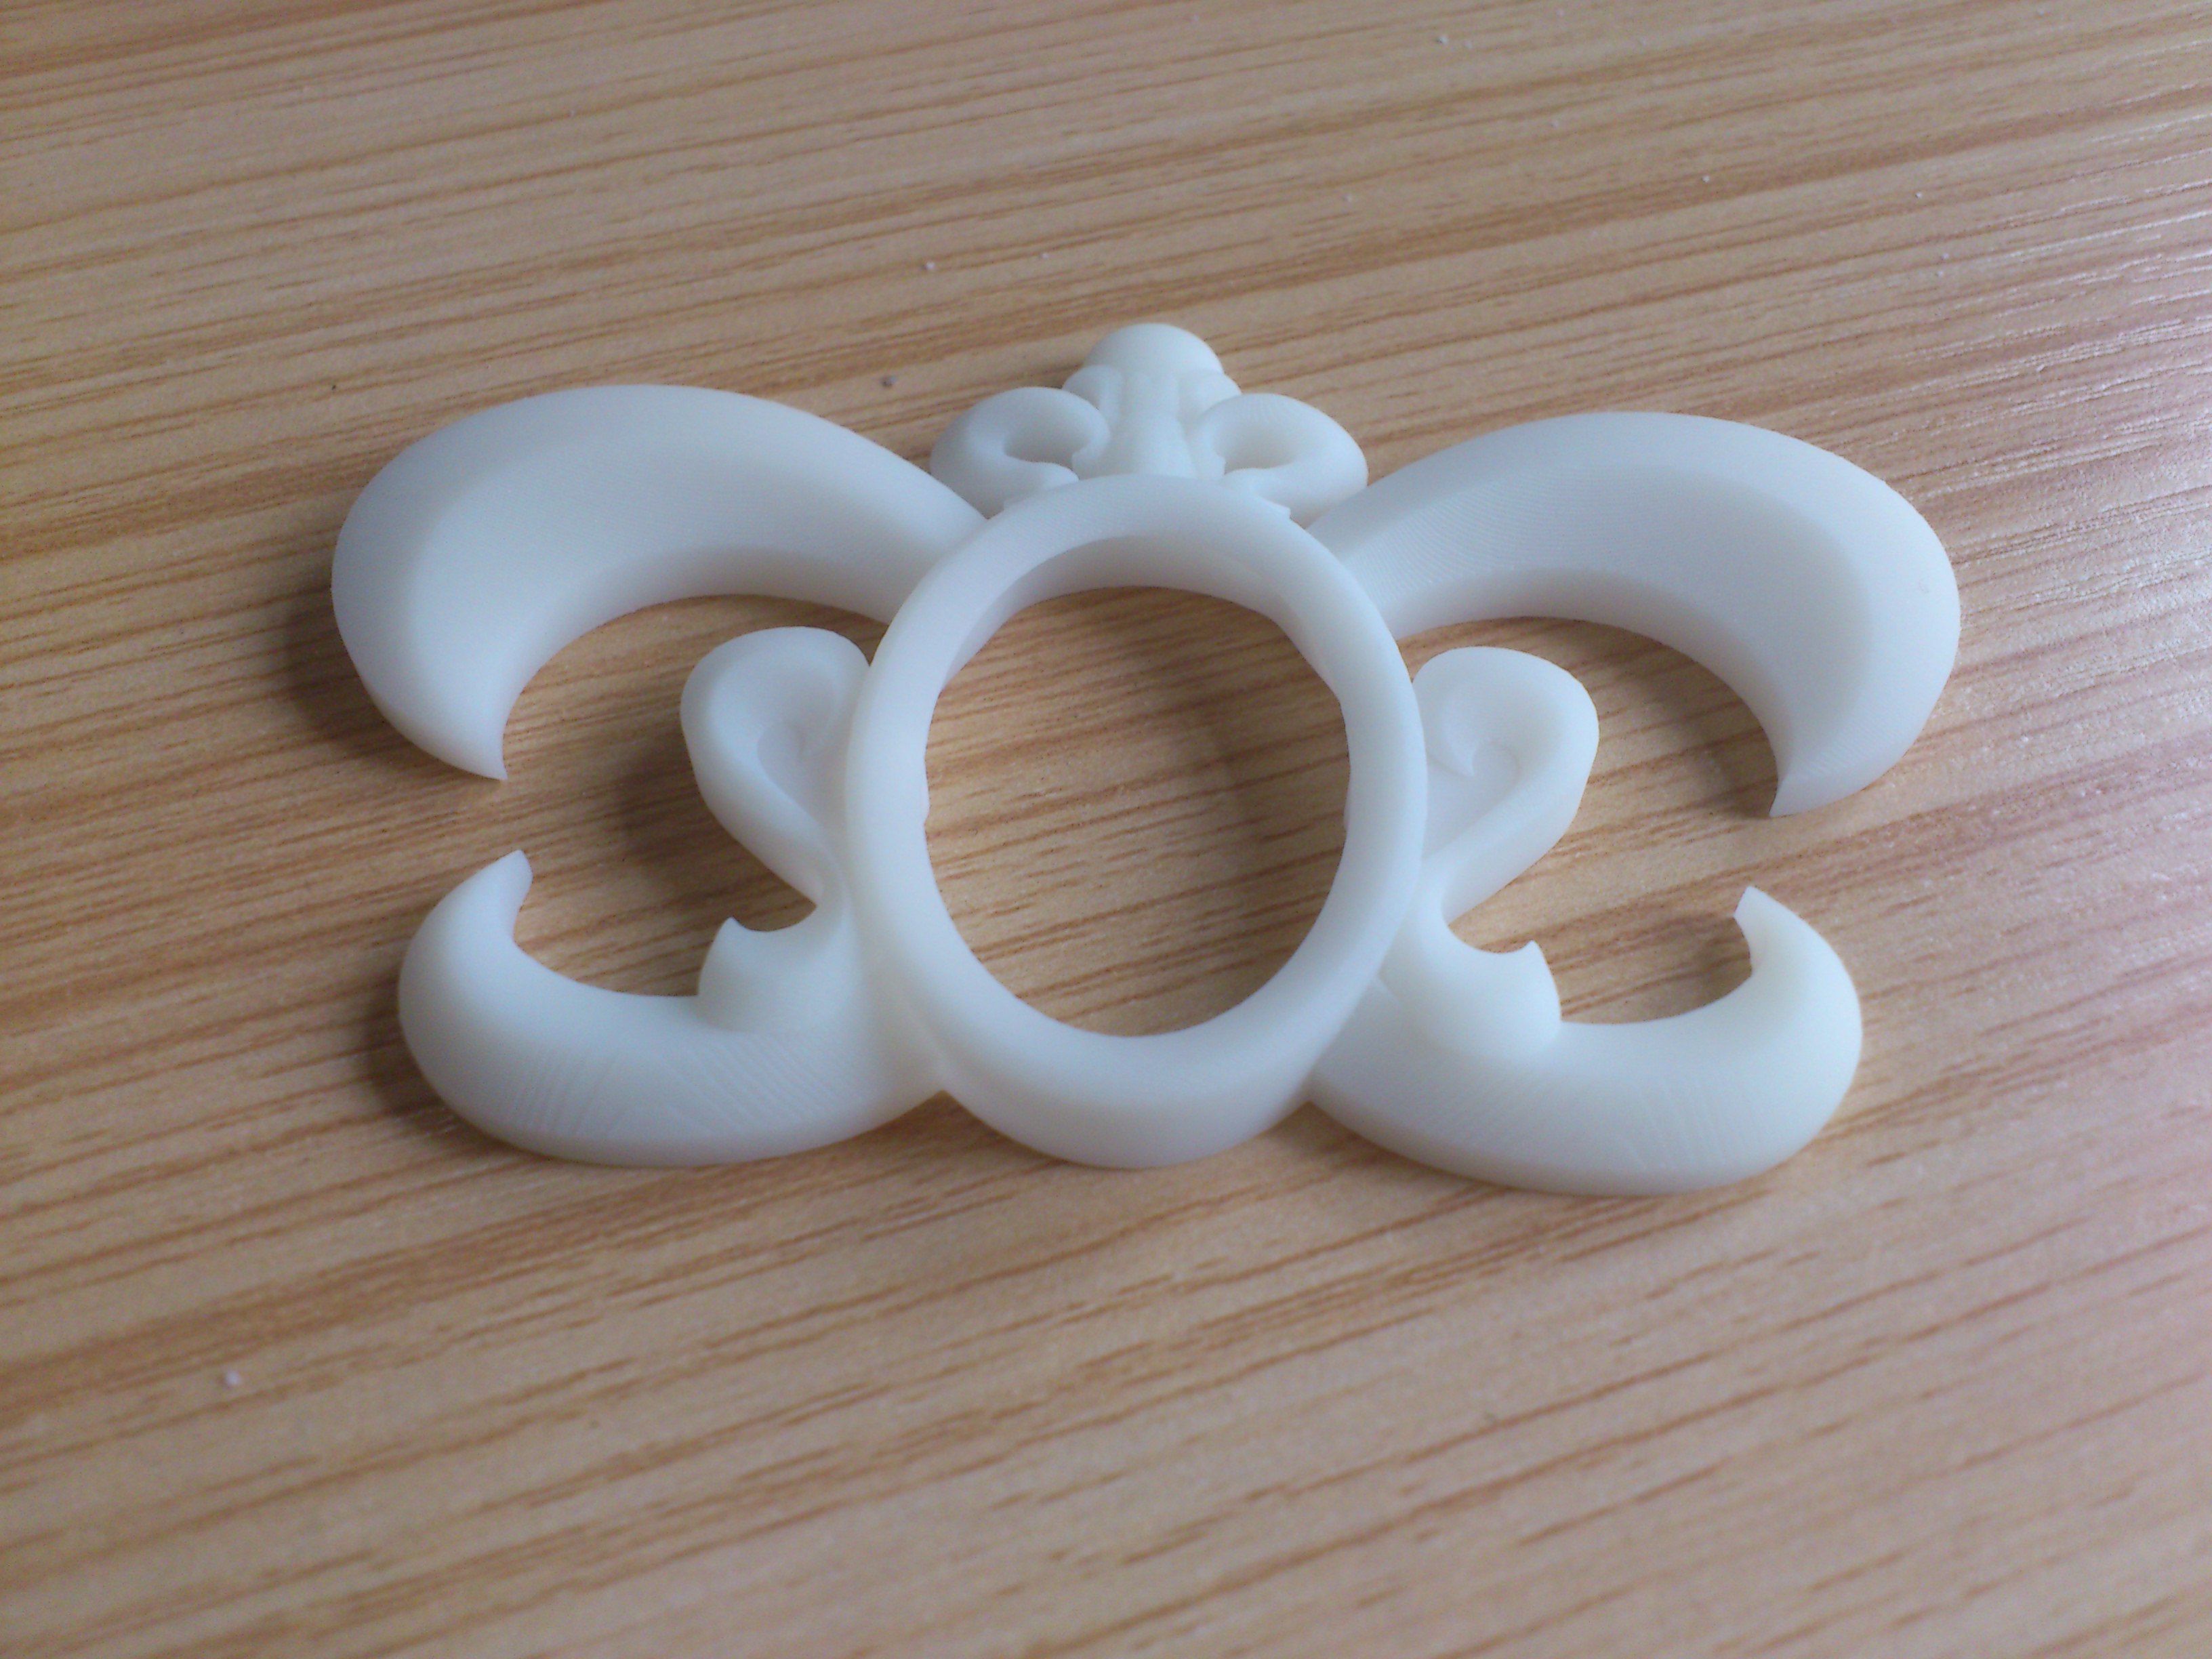 汇通三维打印  蝴蝶饰品塑胶模具 3D打印加工